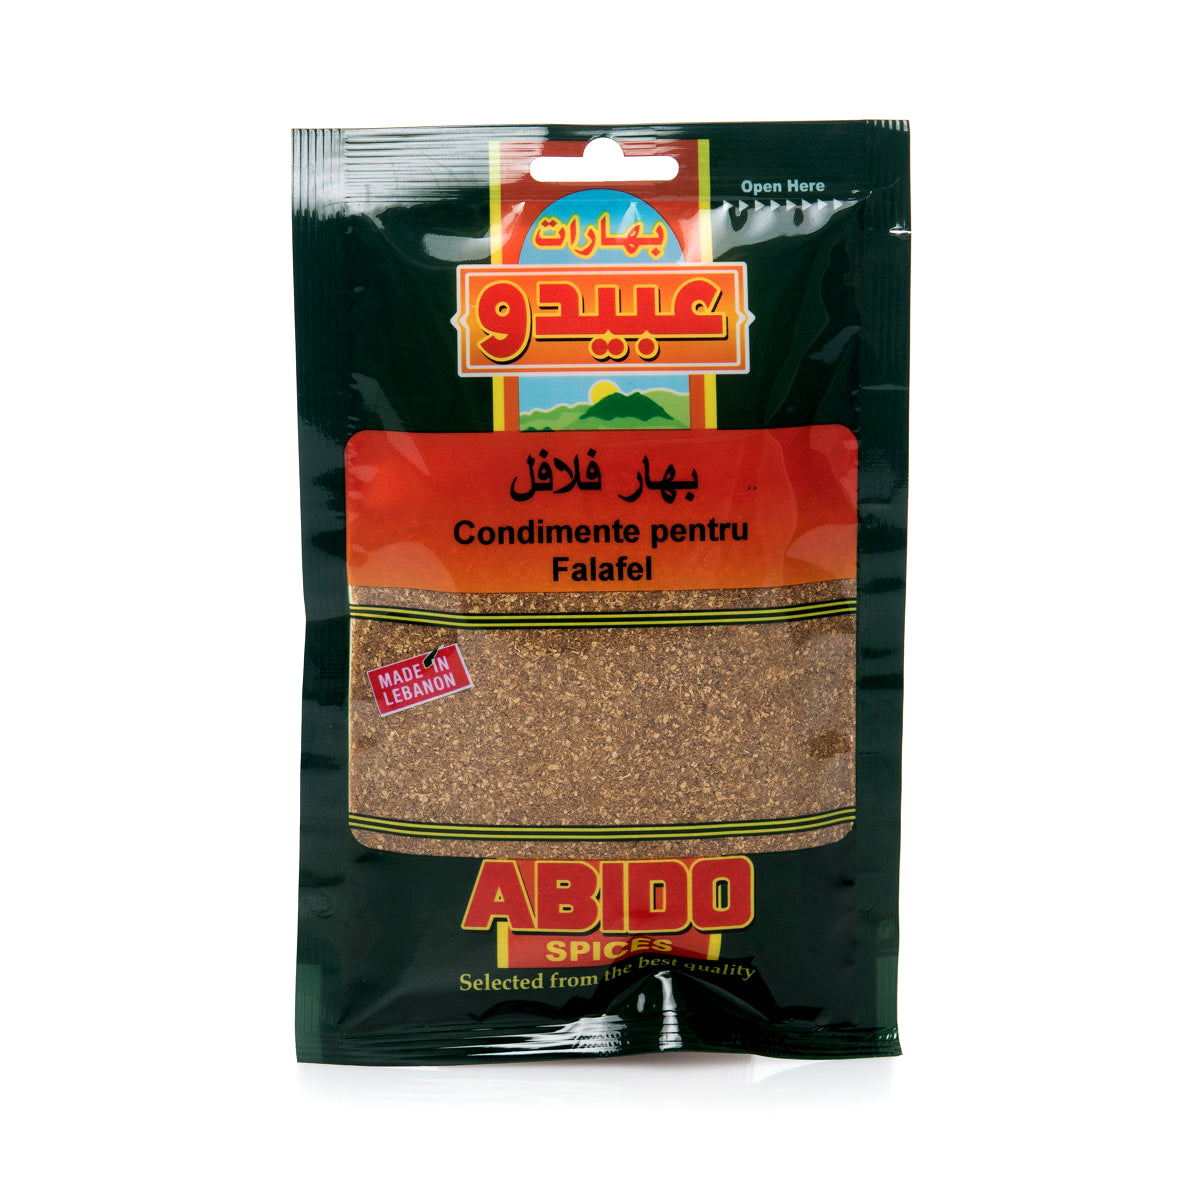 Abido Falafel Spices